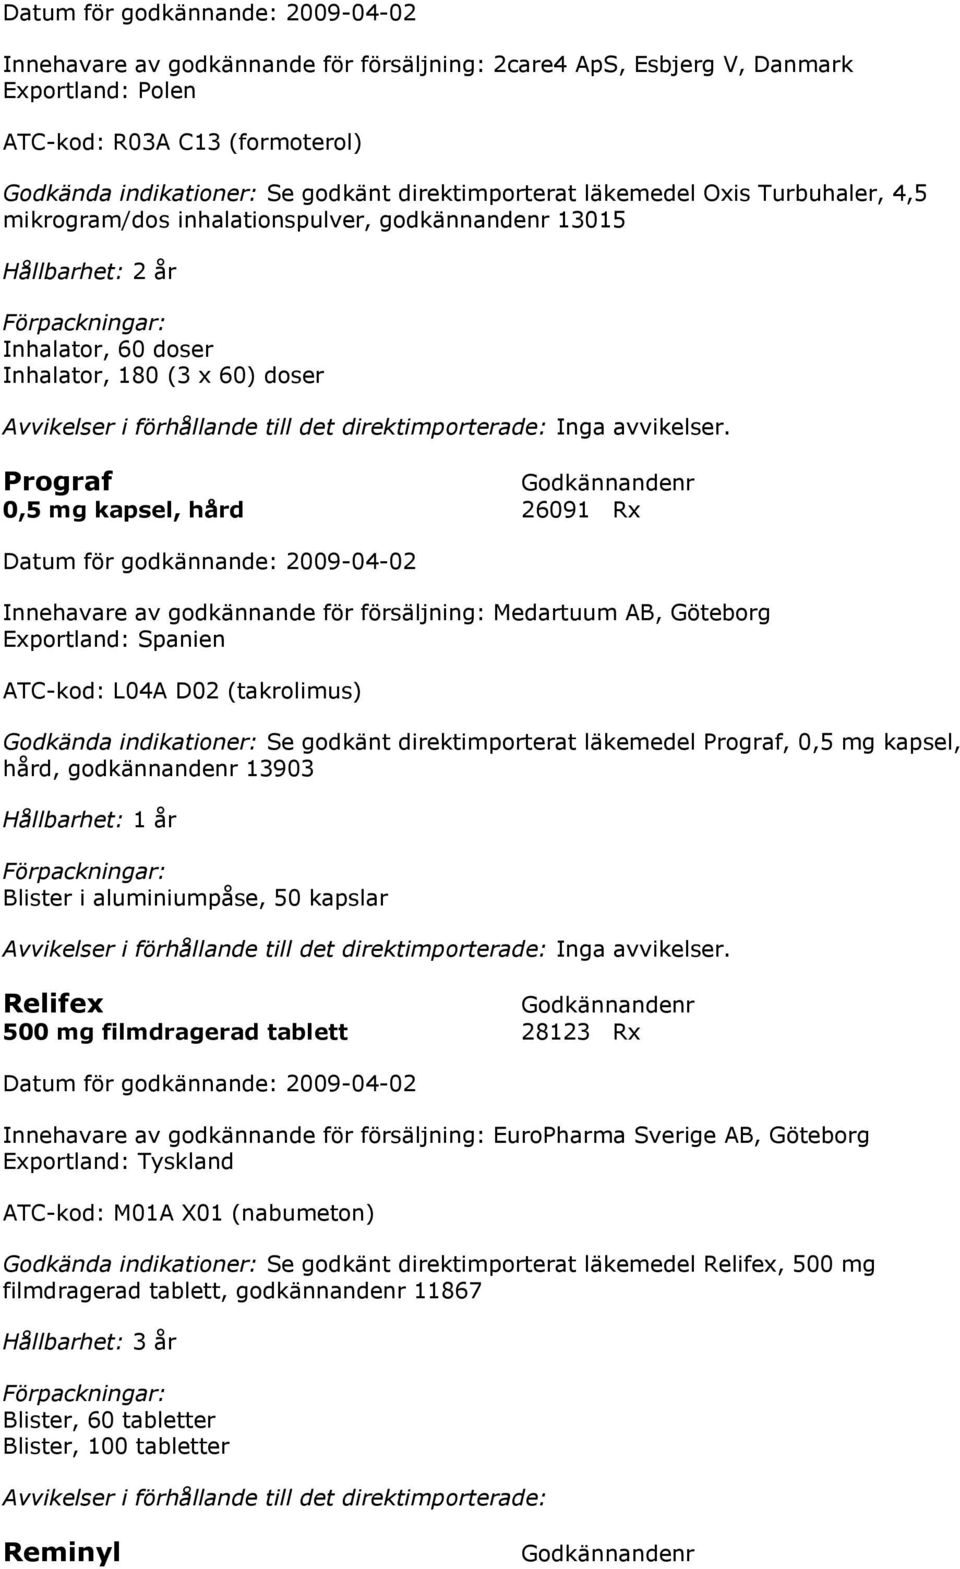 Prograf 0,5 mg kapsel, hård 26091 Rx Innehavare av godkännande för försäljning: Medartuum AB, Göteborg Exportland: Spanien ATC-kod: L04A D02 (takrolimus) Se godkänt direktimporterat läkemedel